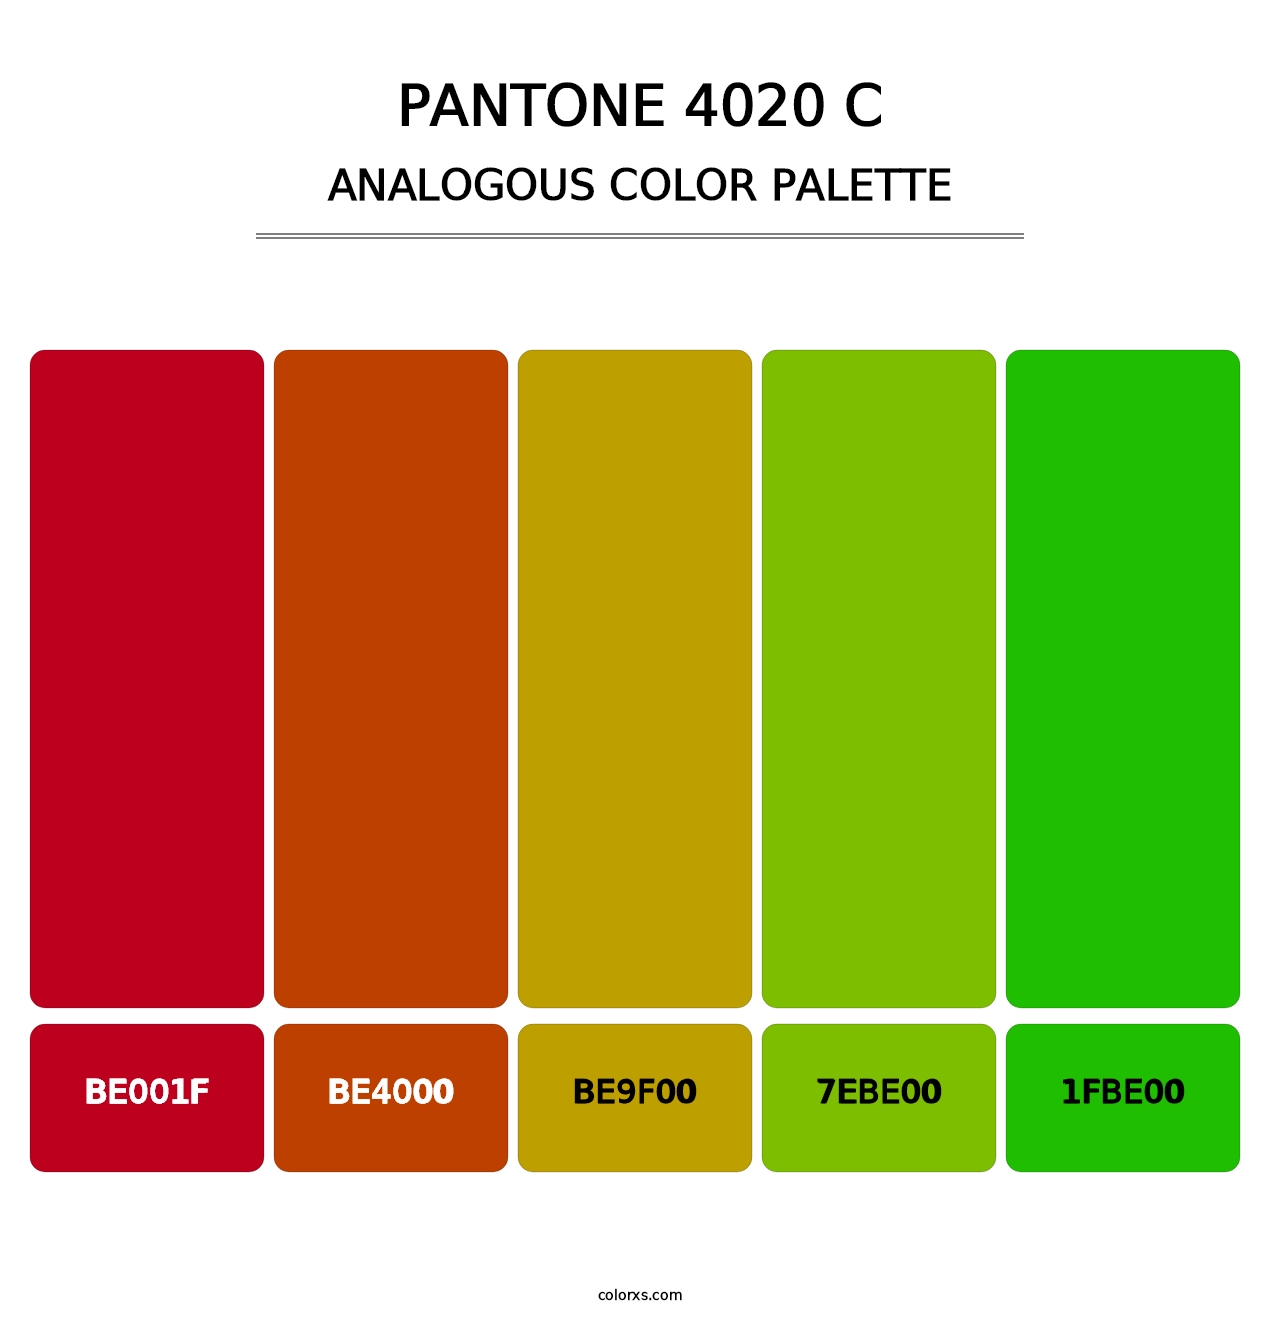 PANTONE 4020 C - Analogous Color Palette